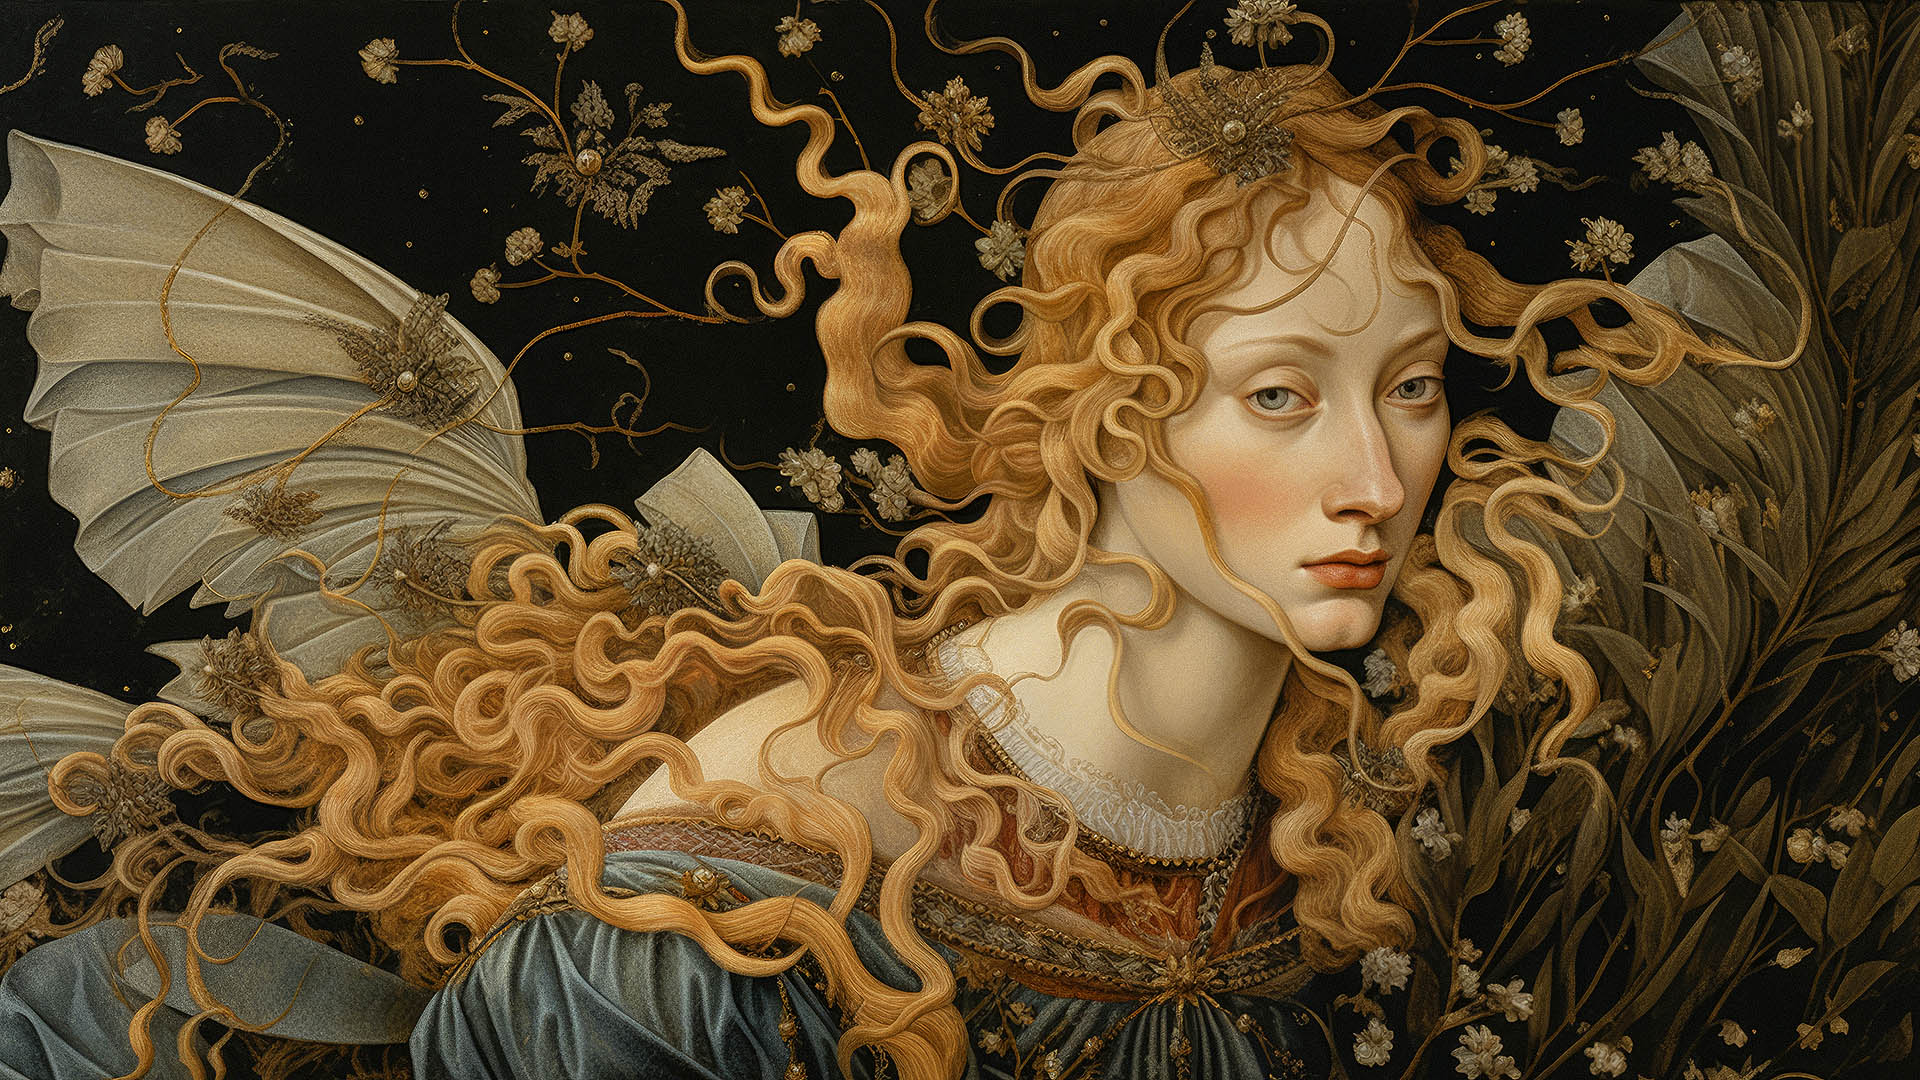 Πίνακας του Botticelli αξίας 100 εκατ. ευρώ βρέθηκε σε σπίτι στη νότια Ιταλία